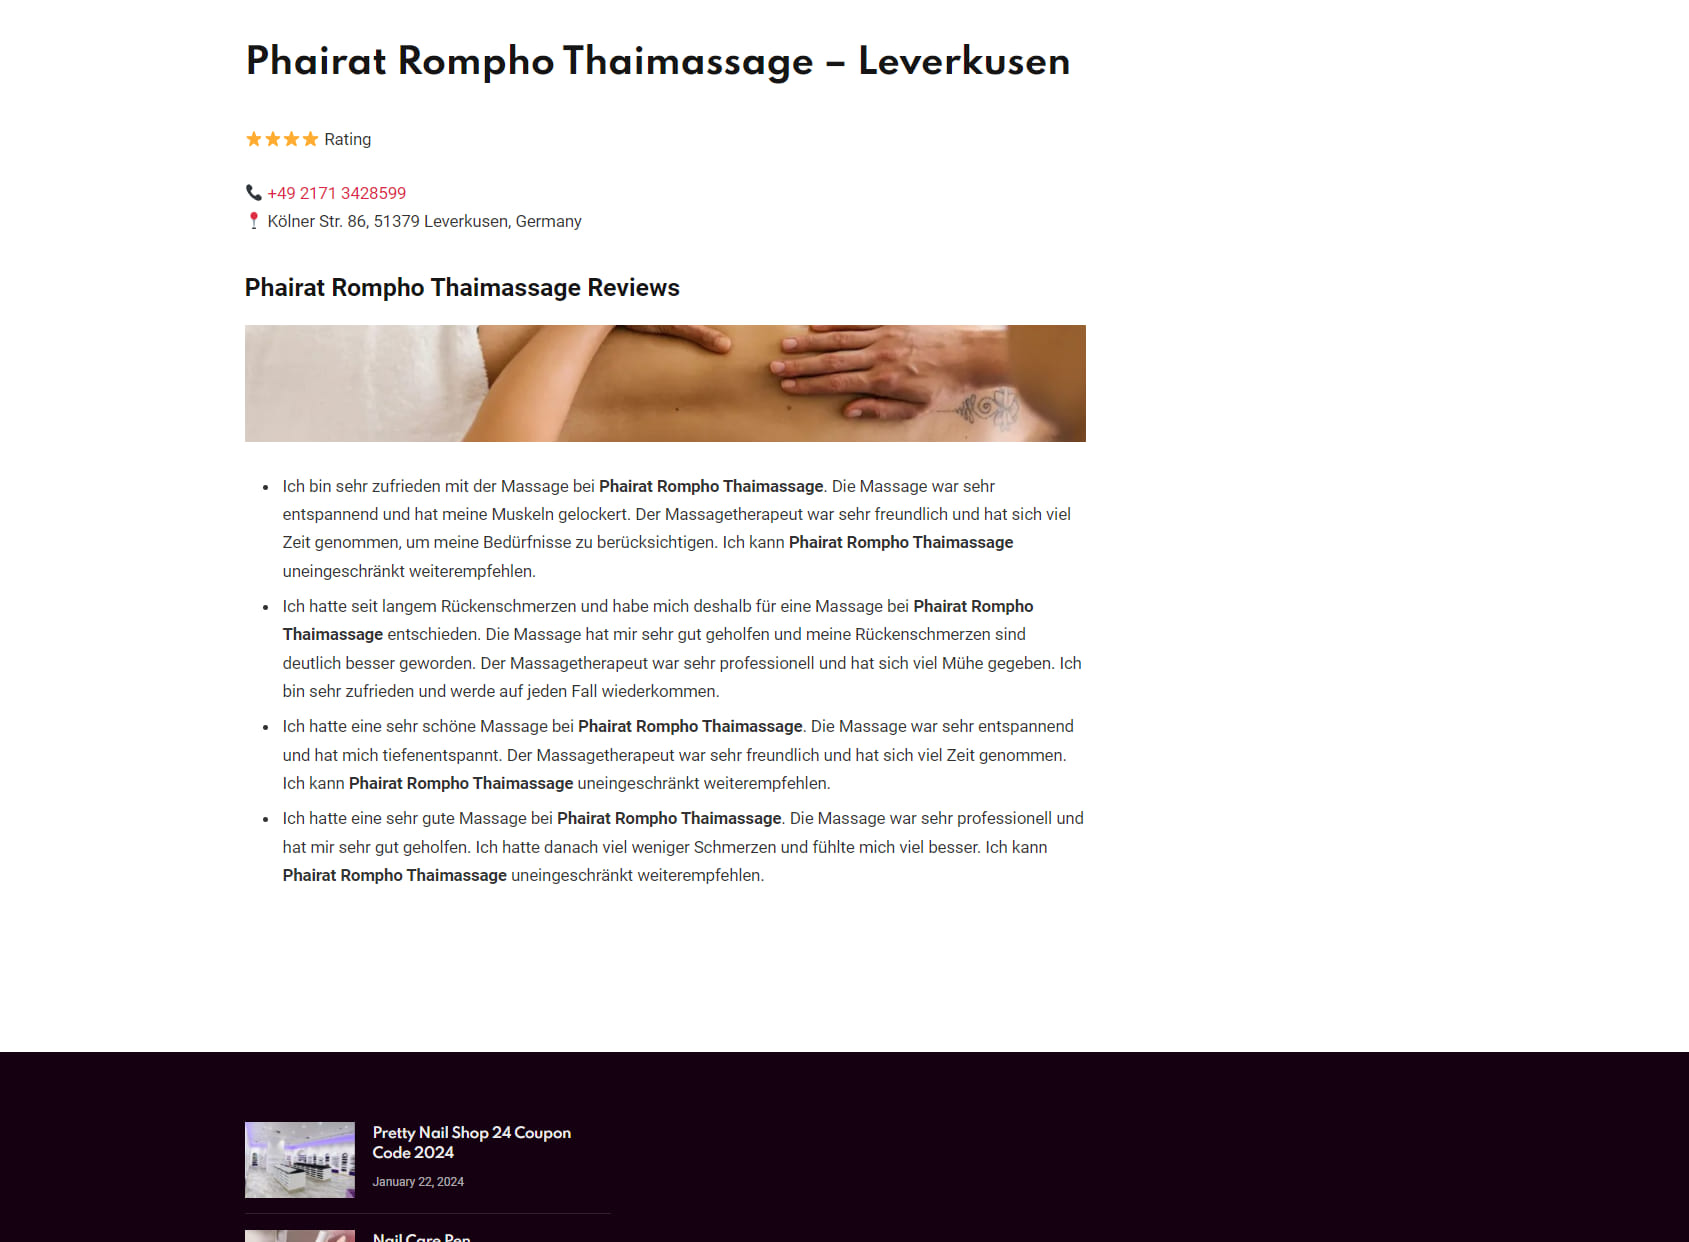 Phairat Rompho Thaimassage - Leverkusen